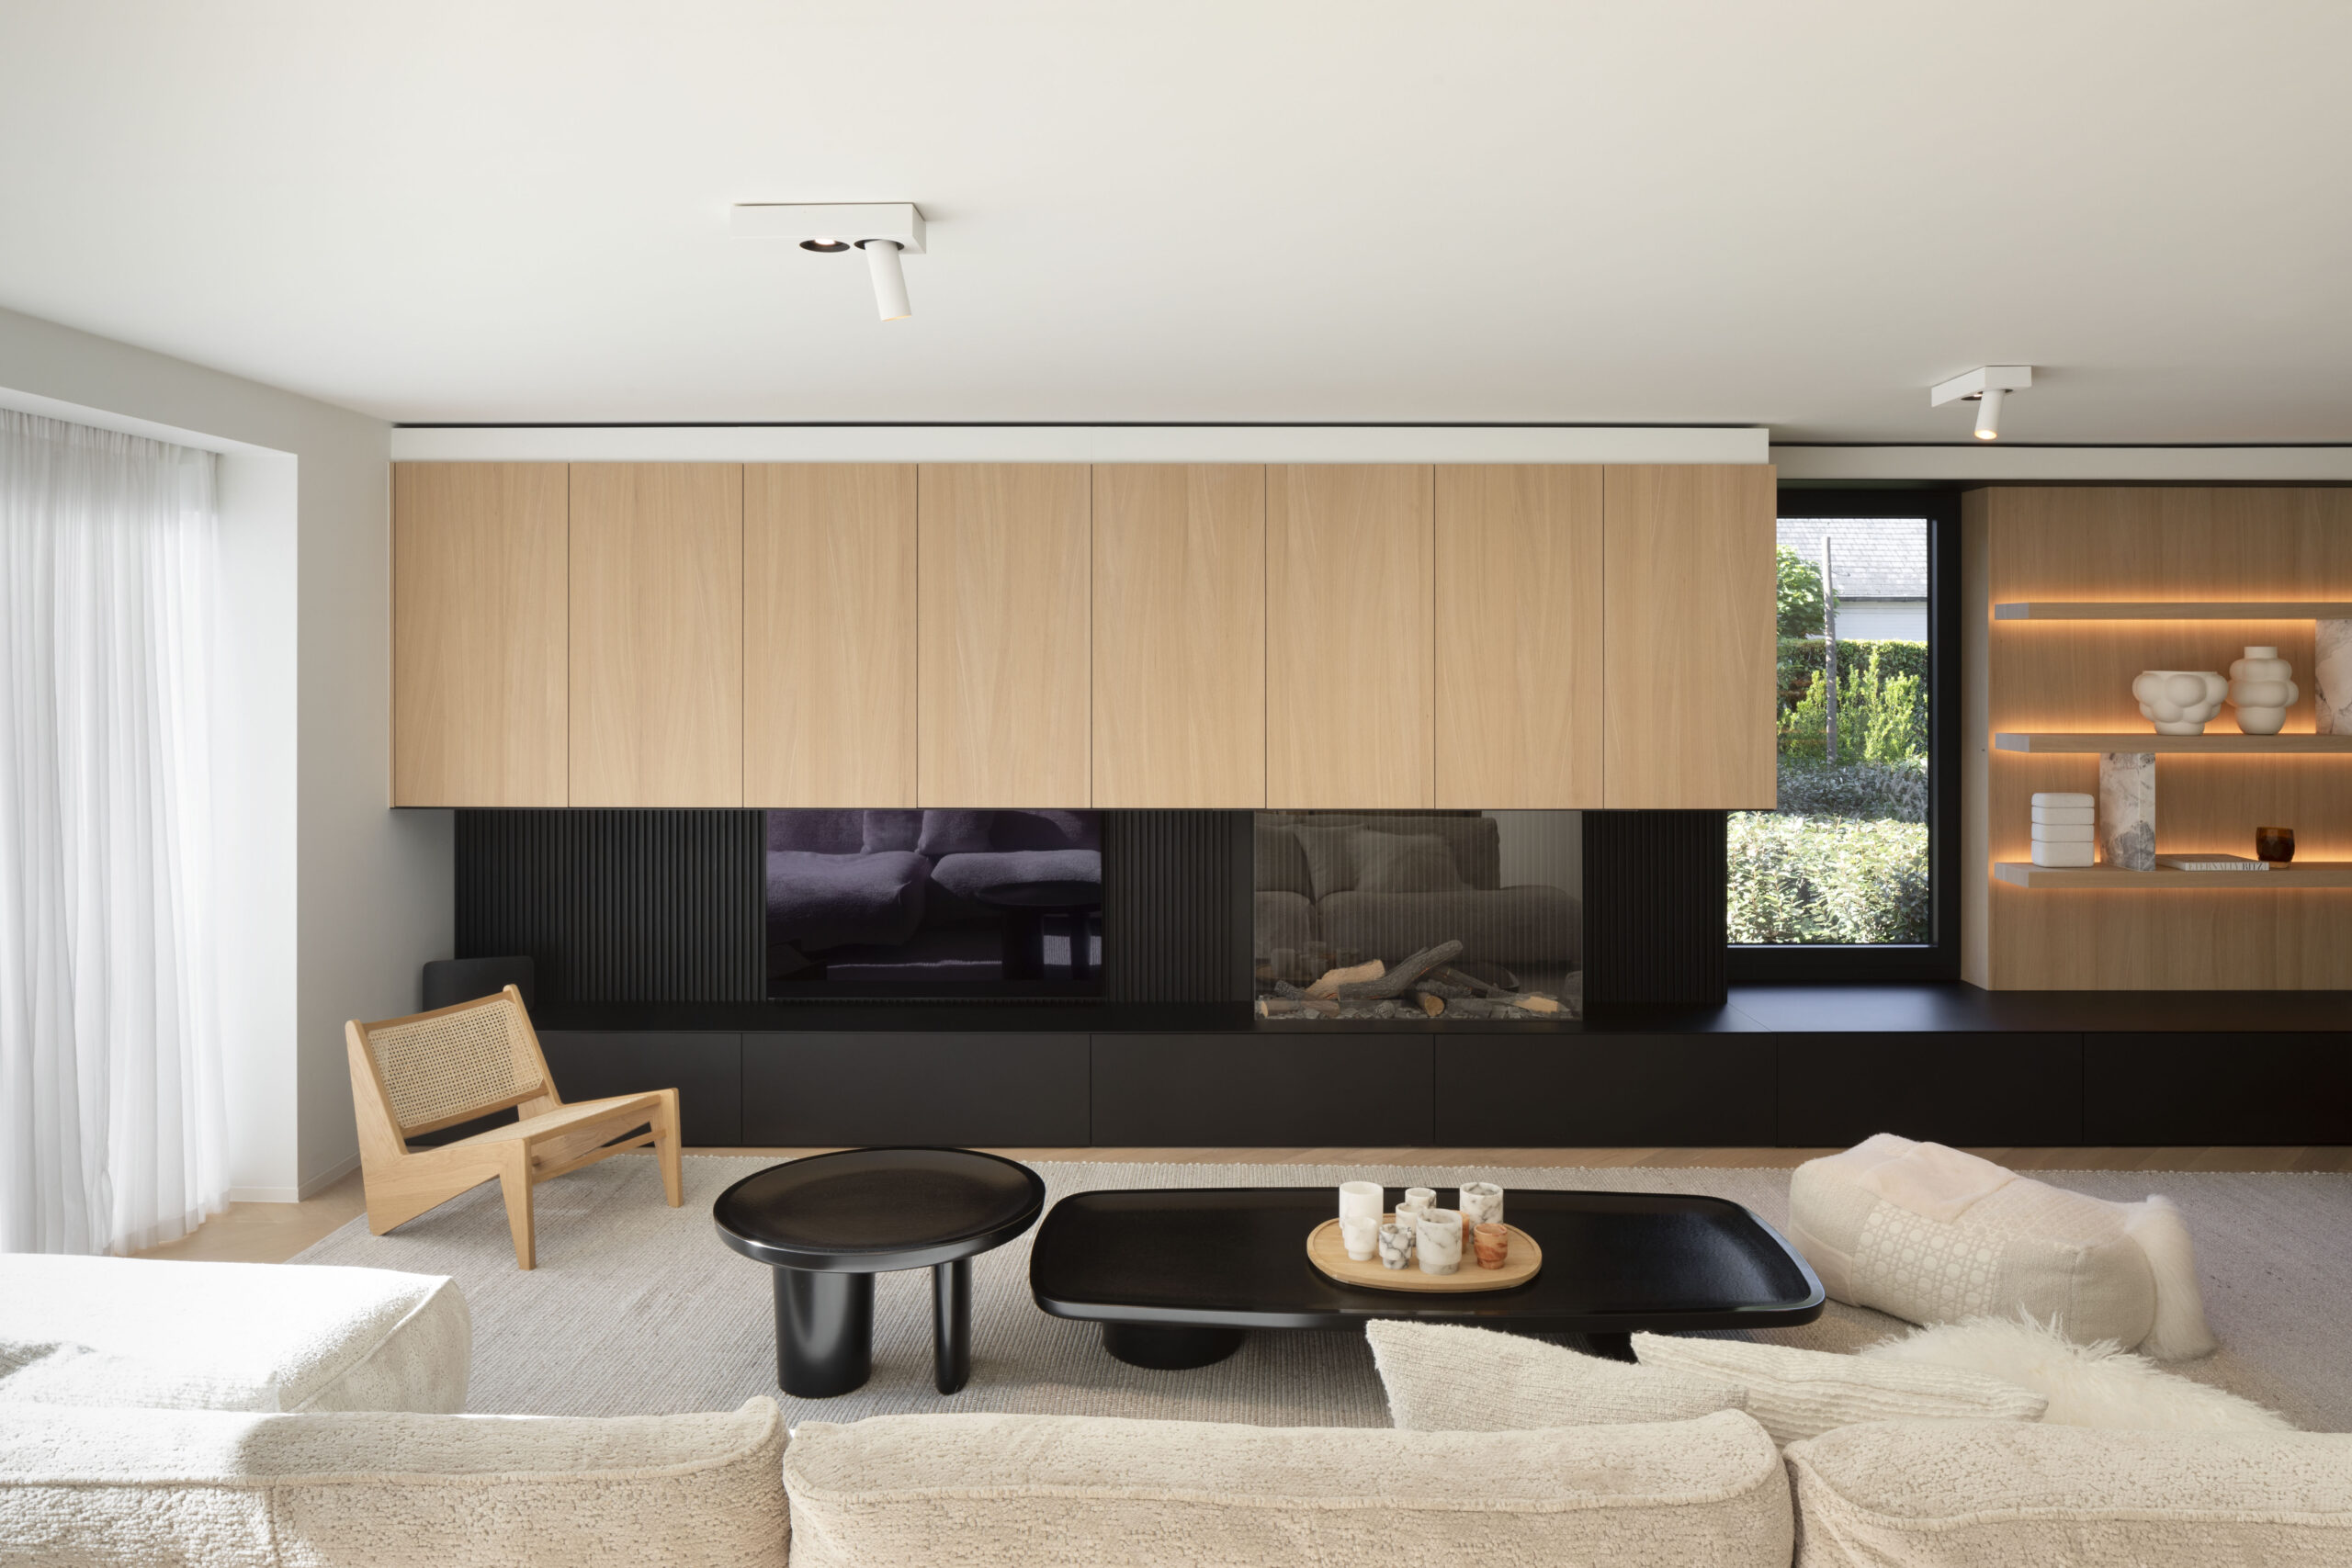 Moderne woonkamer met houten accenten, zwarte tafels en verlichte planken.